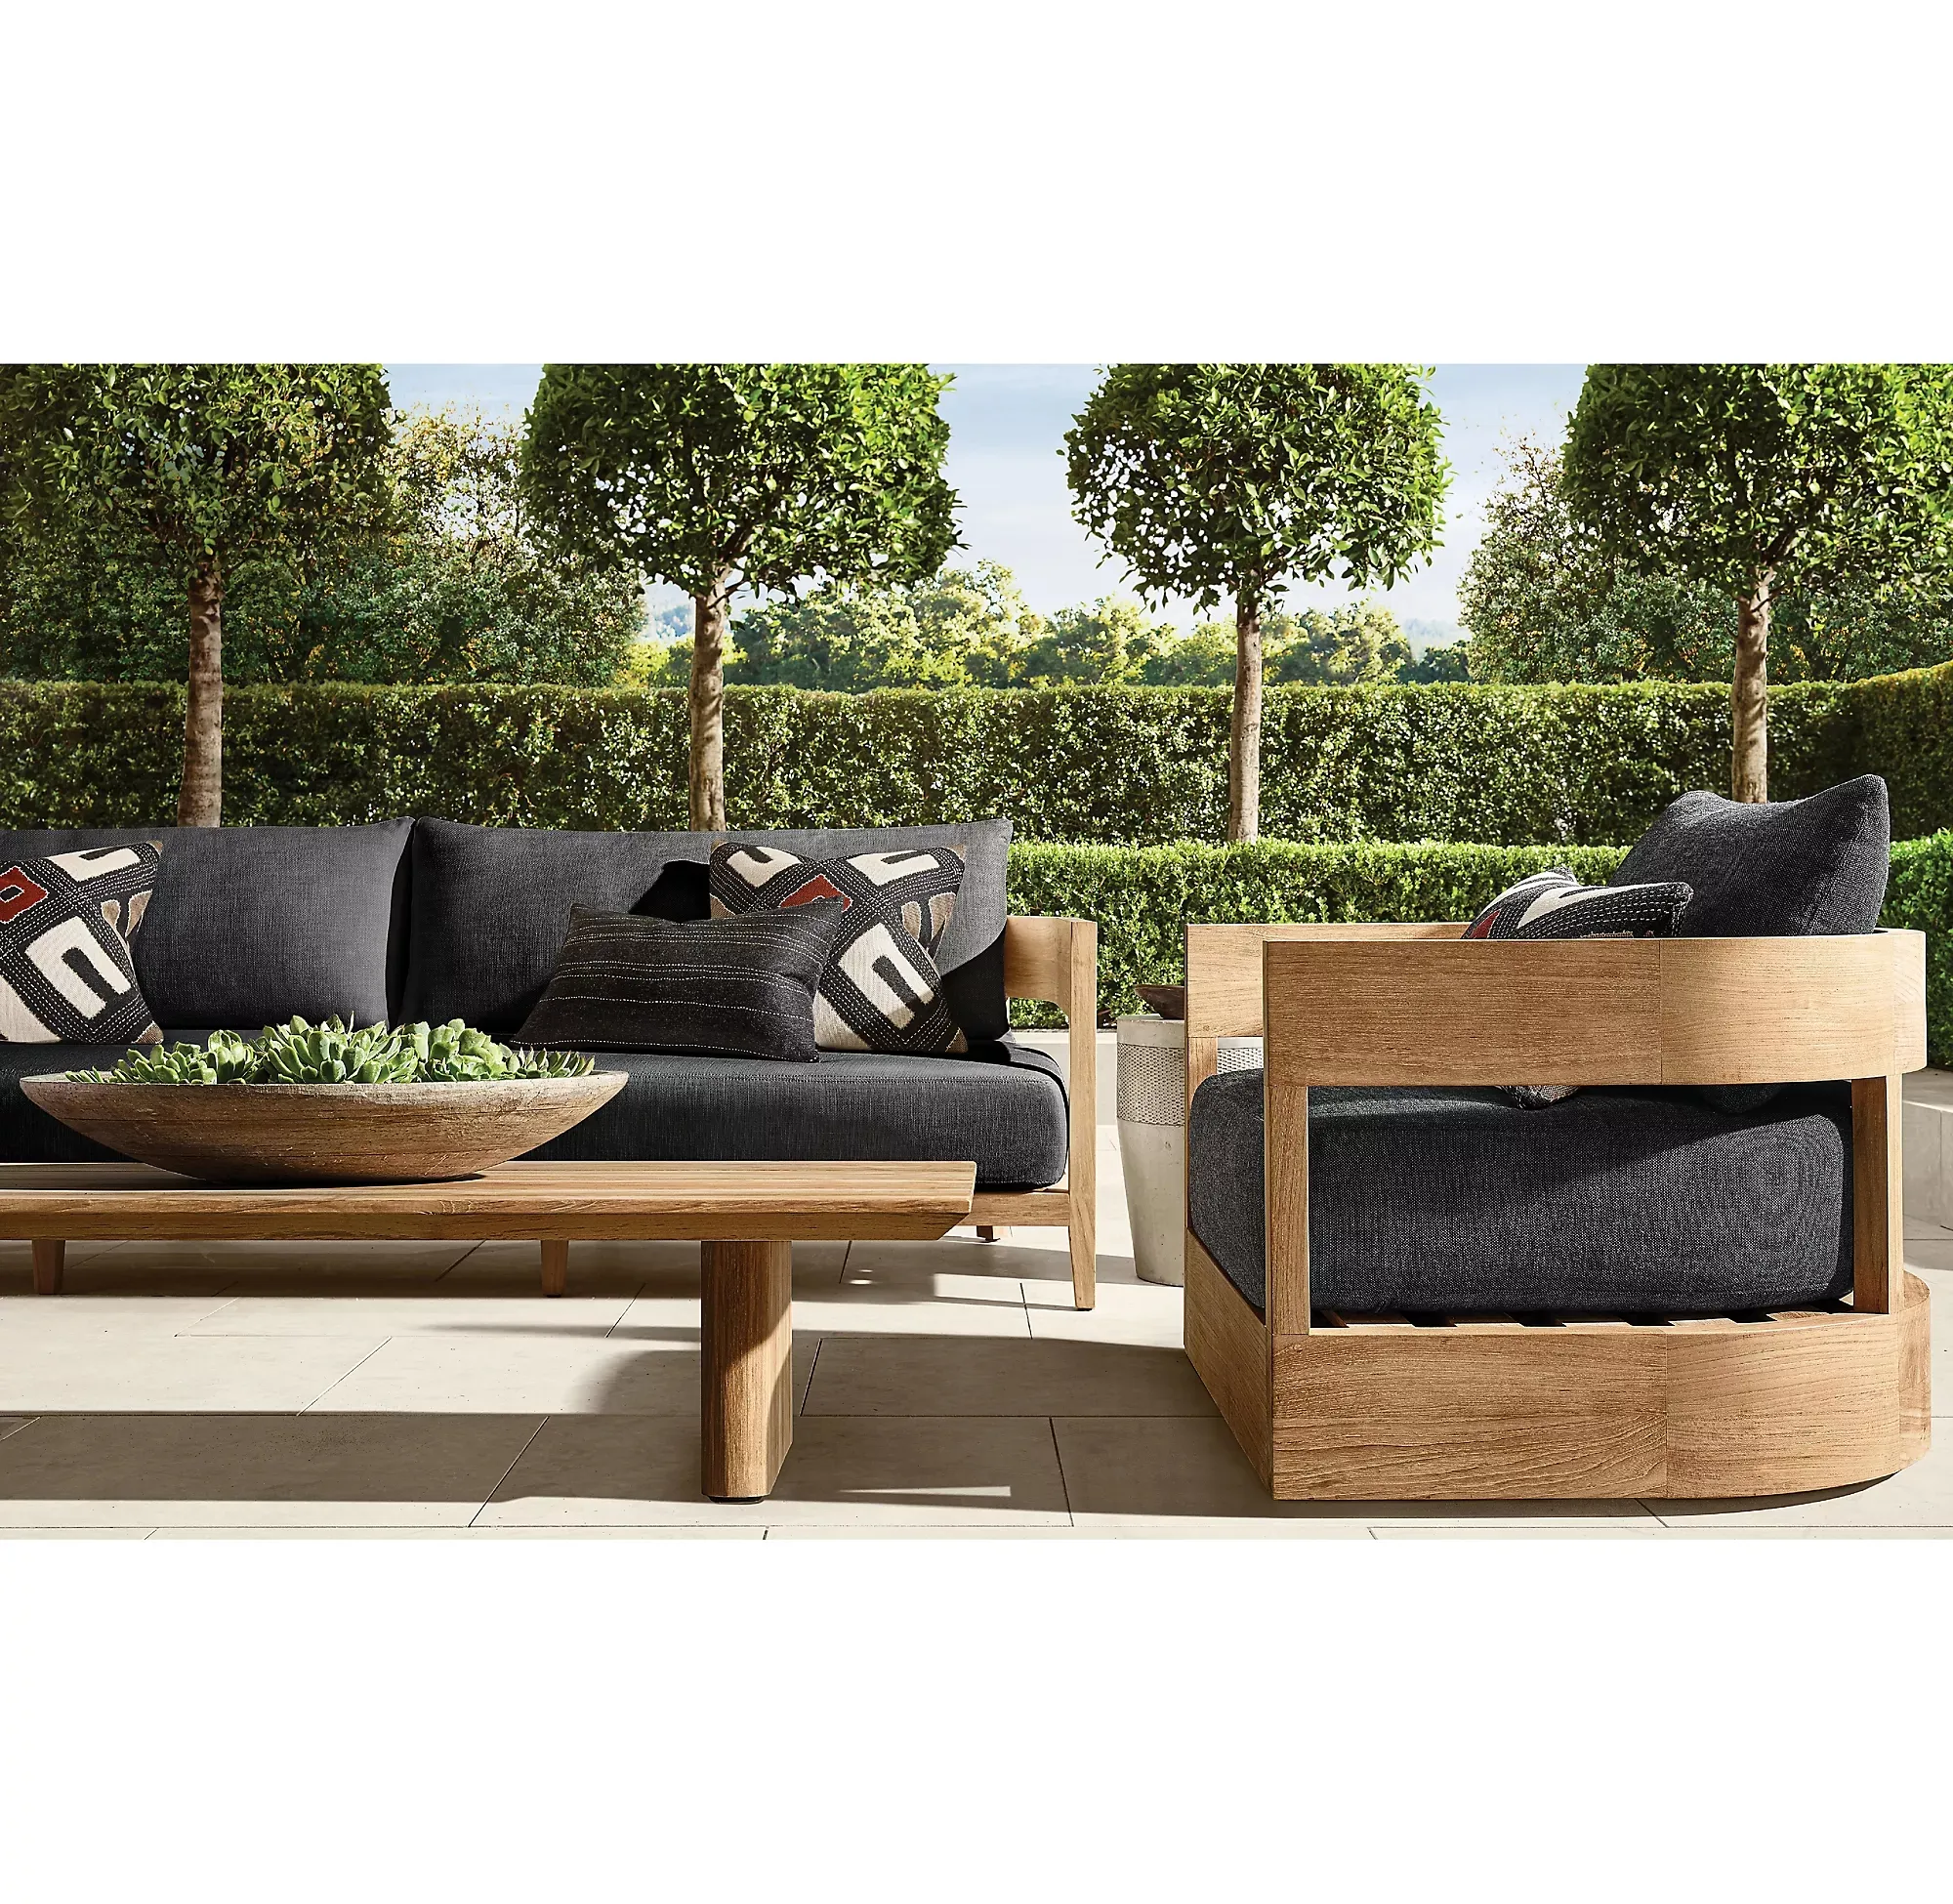 Jardín al aire libre teca ocio mesa auxiliar al aire libre Villa Hotel sofá conjunto